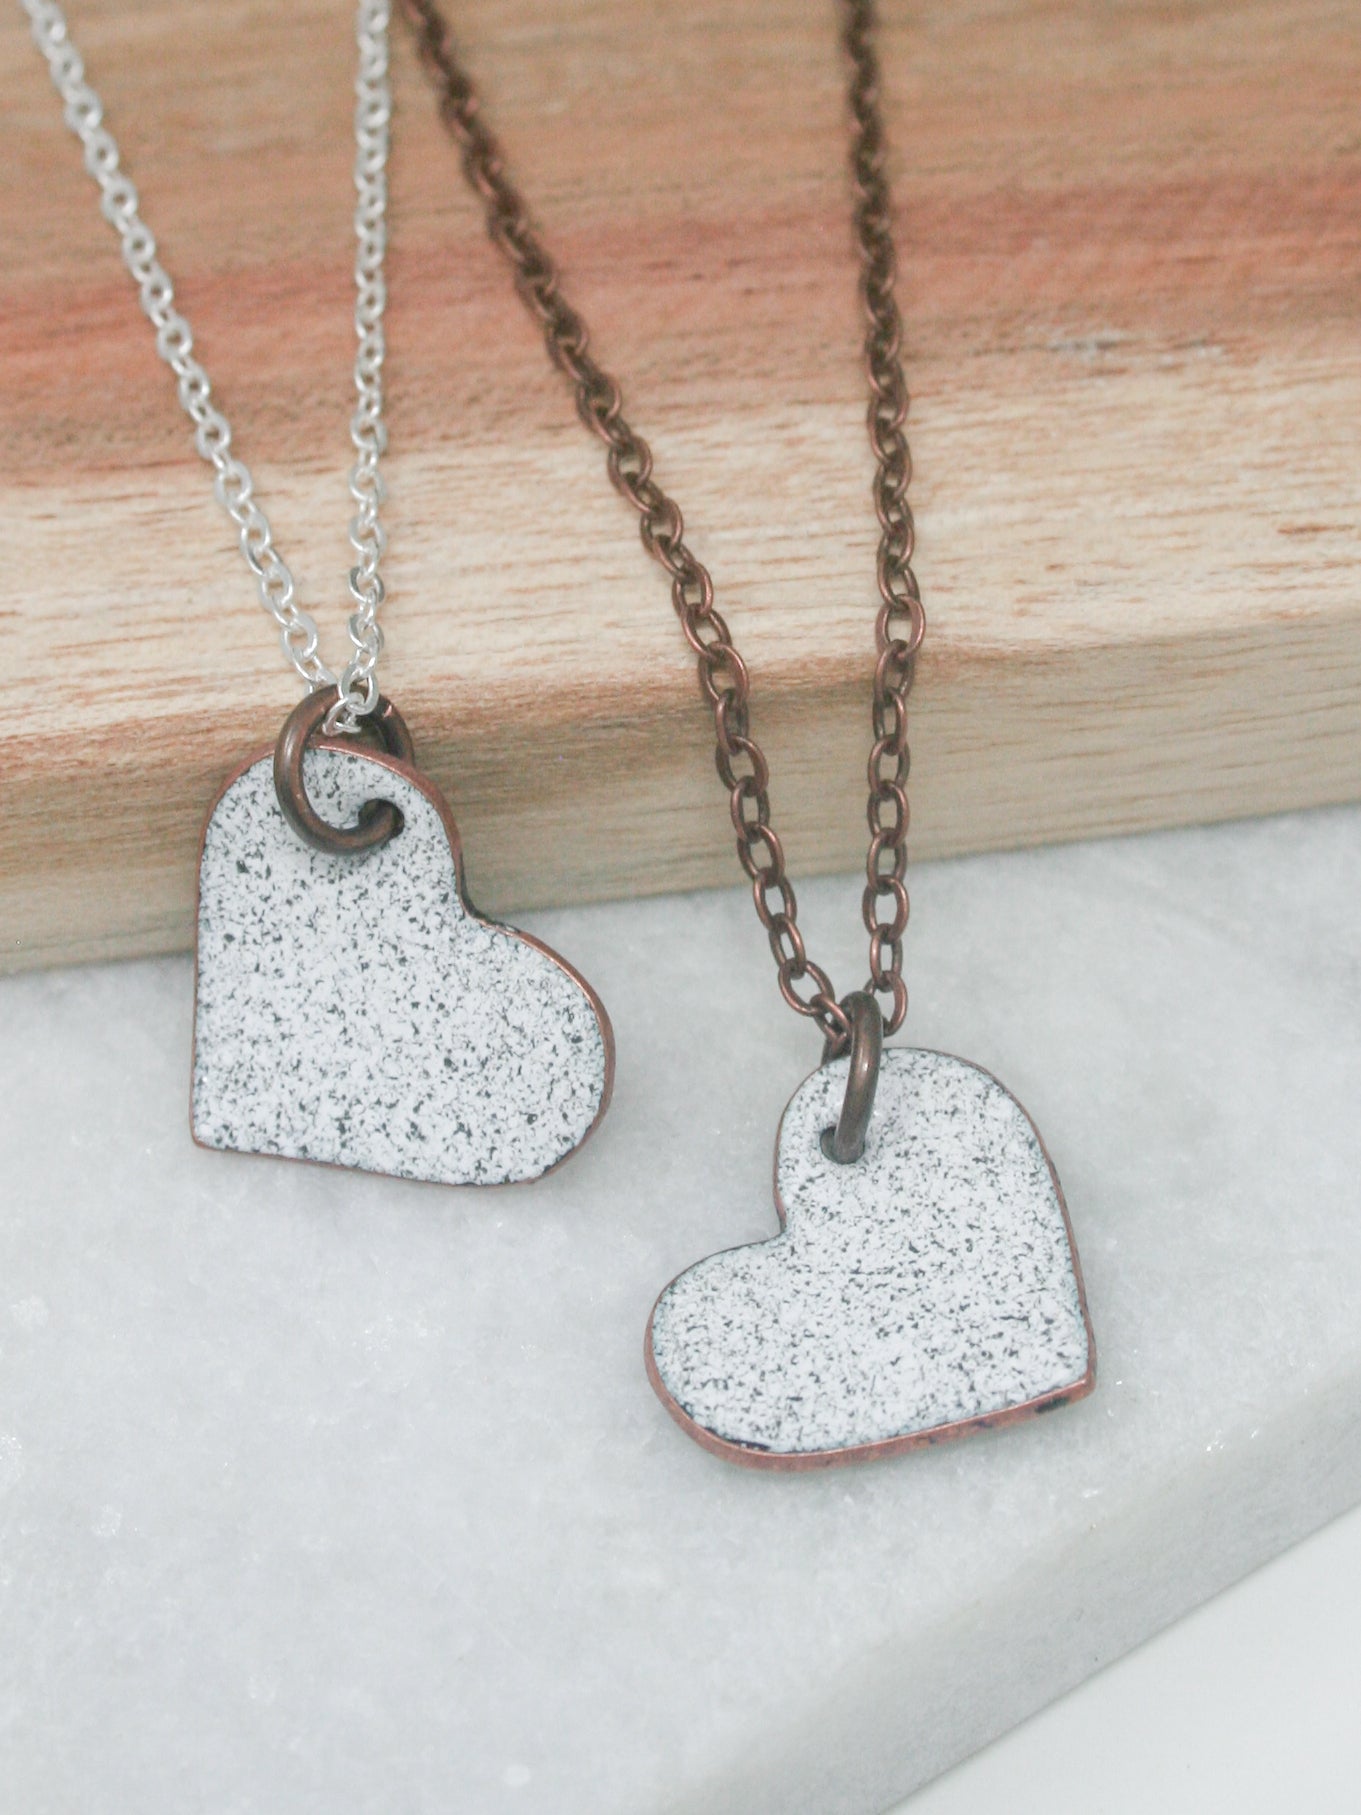 Enamel heart necklaces